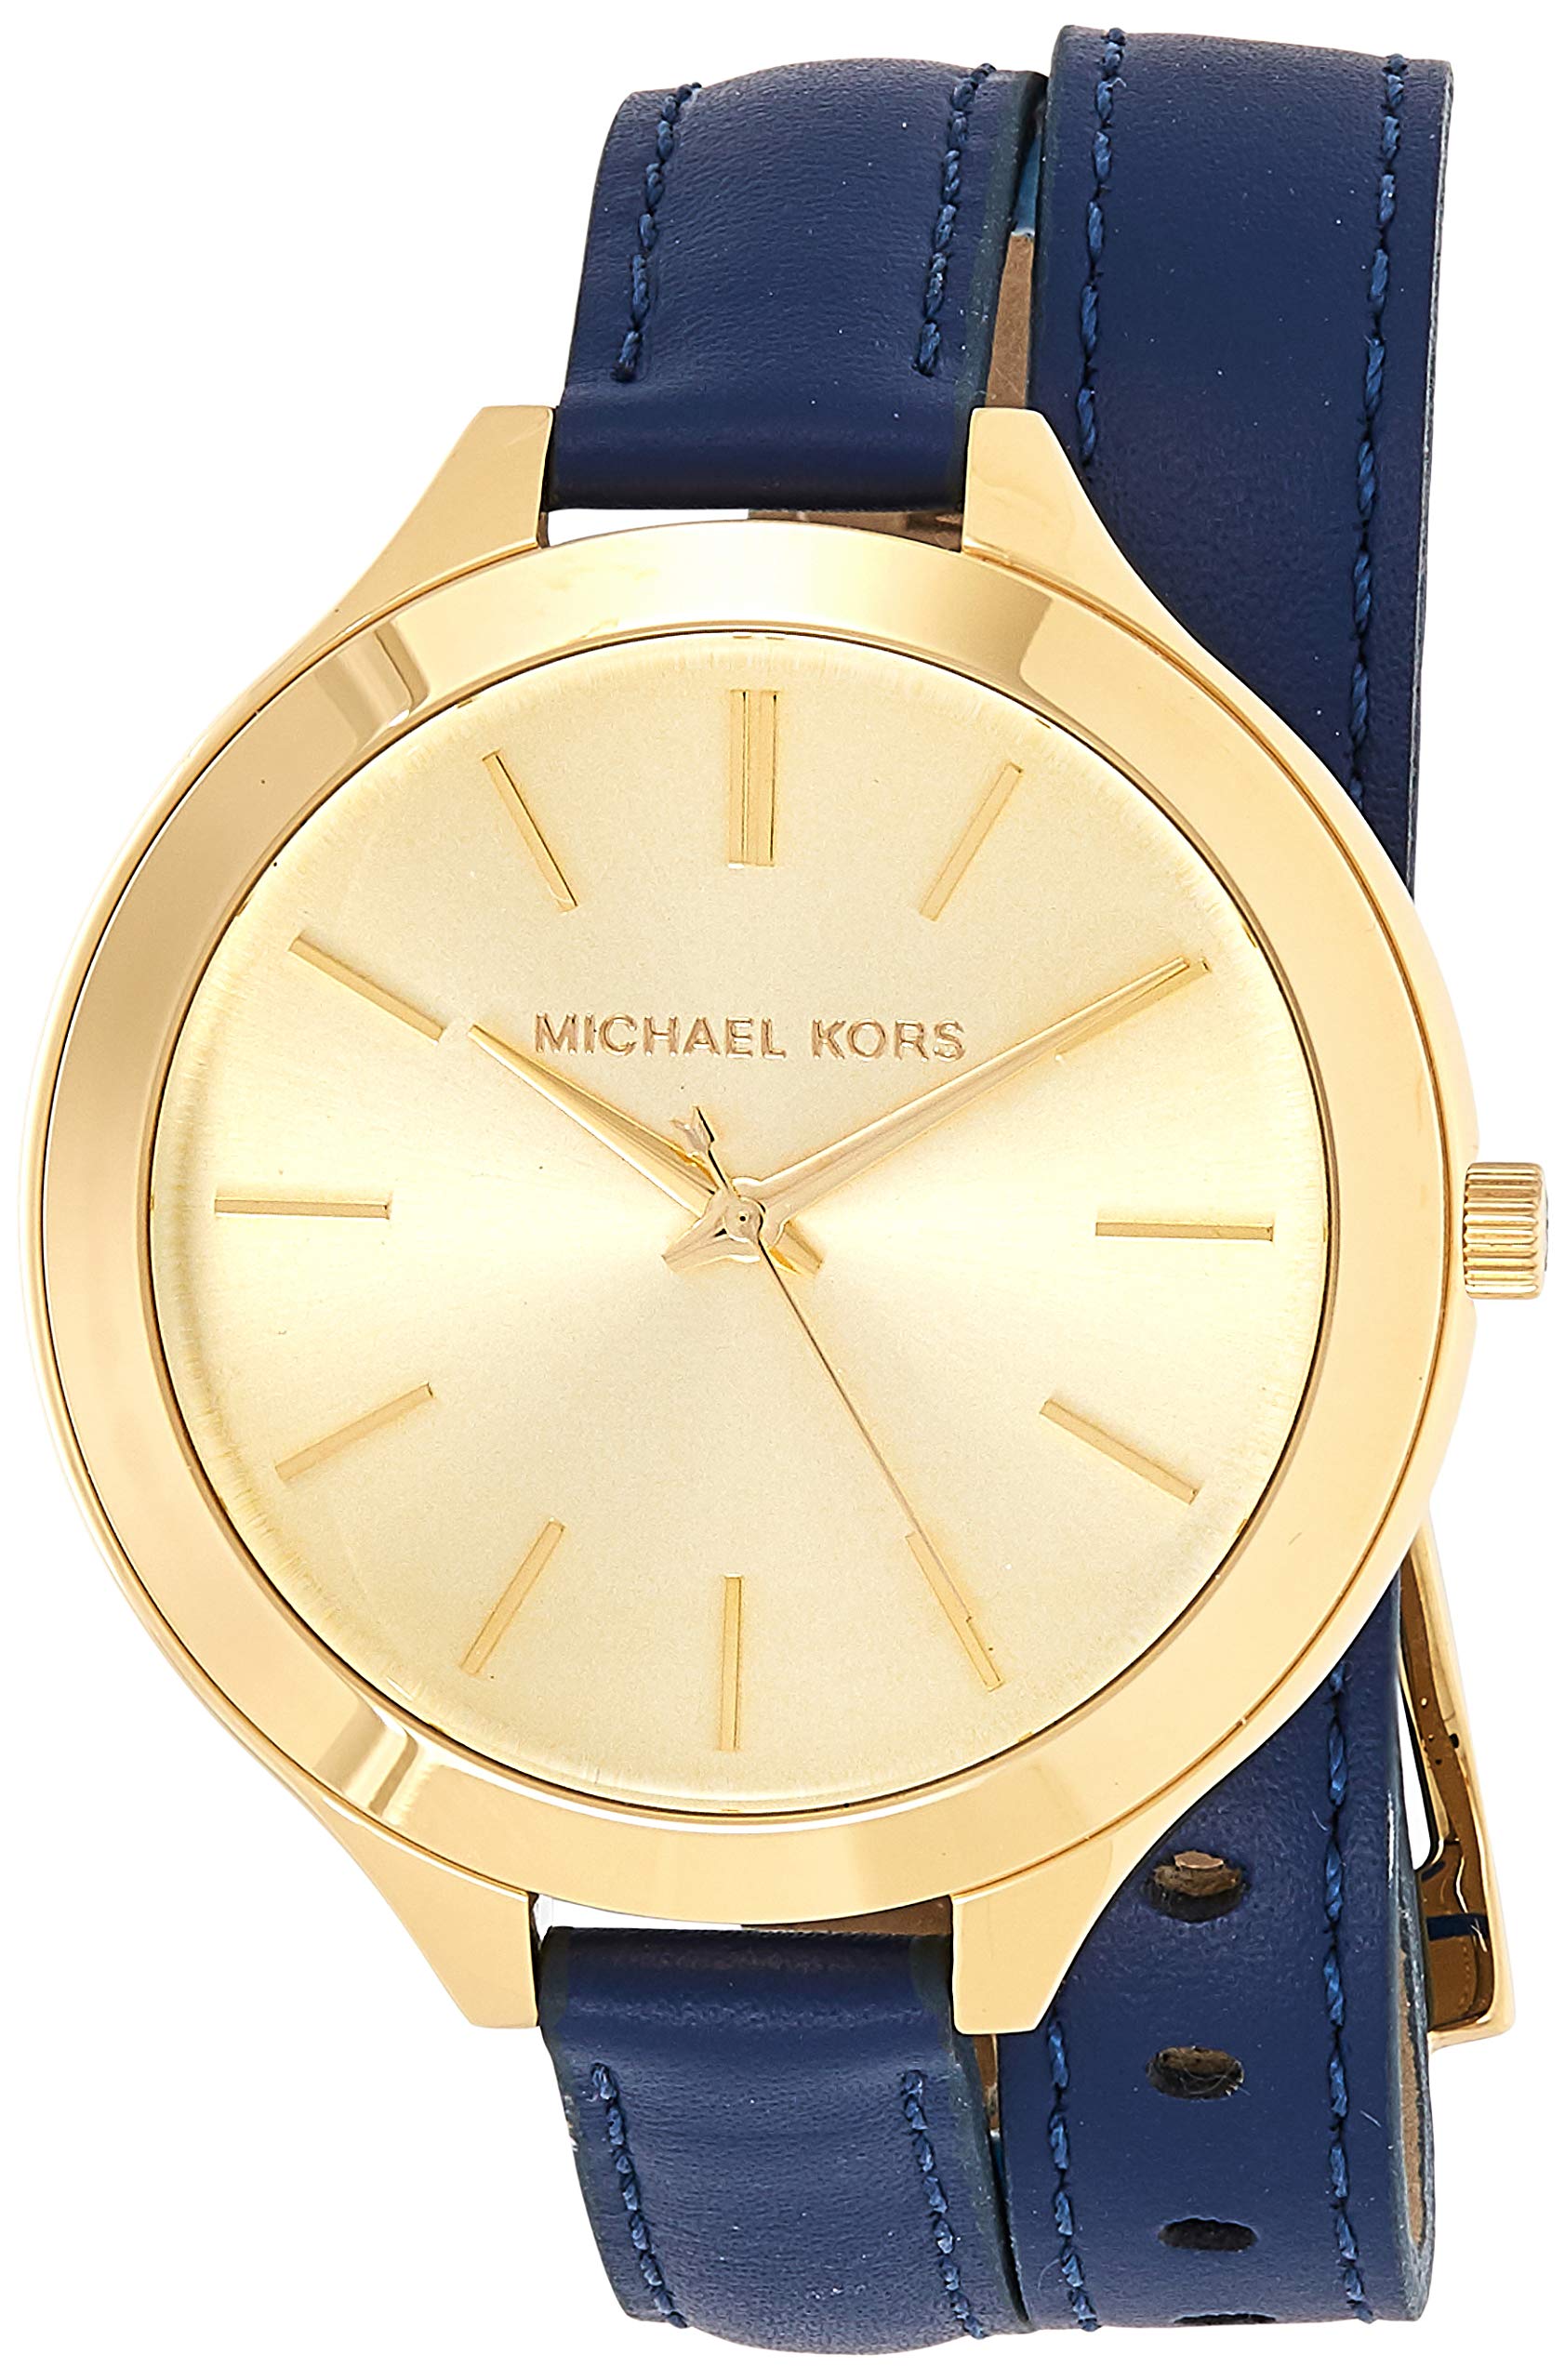 MICHAEL KORS Bradshaw Two Tone Chronograph Leather Watch MK5629 53  eBay